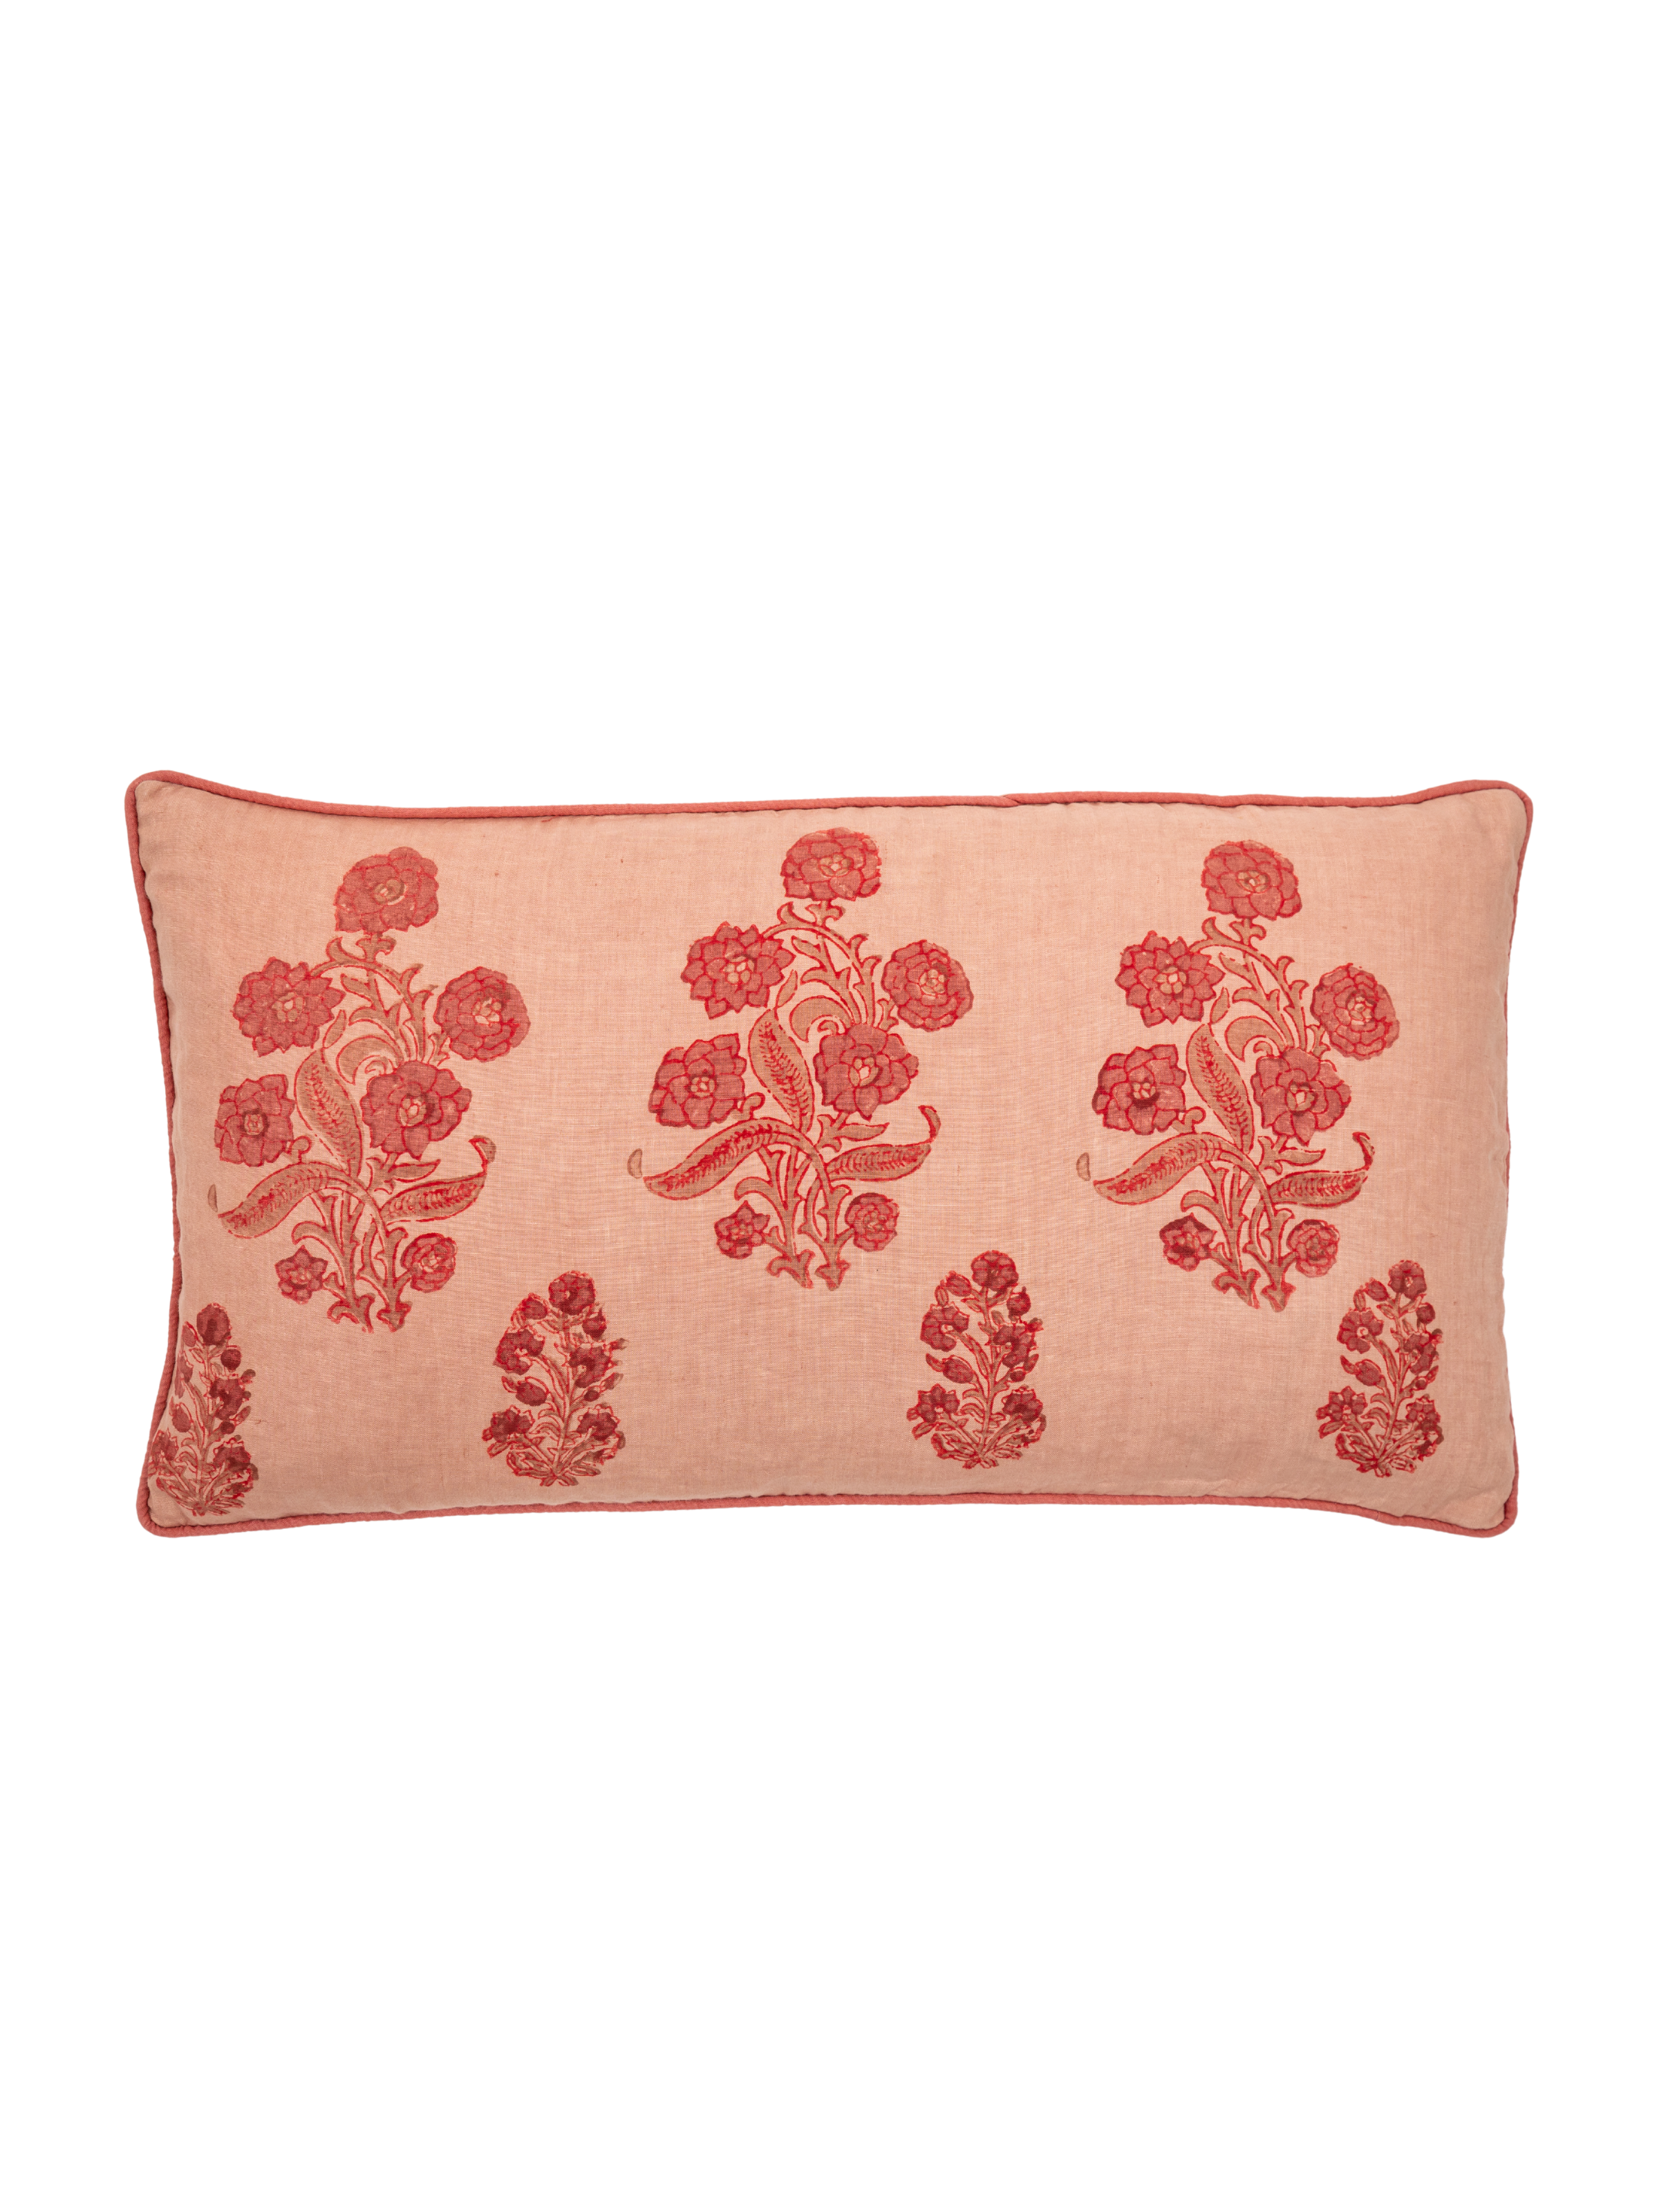 English Garden Lumbar Pillow Cover